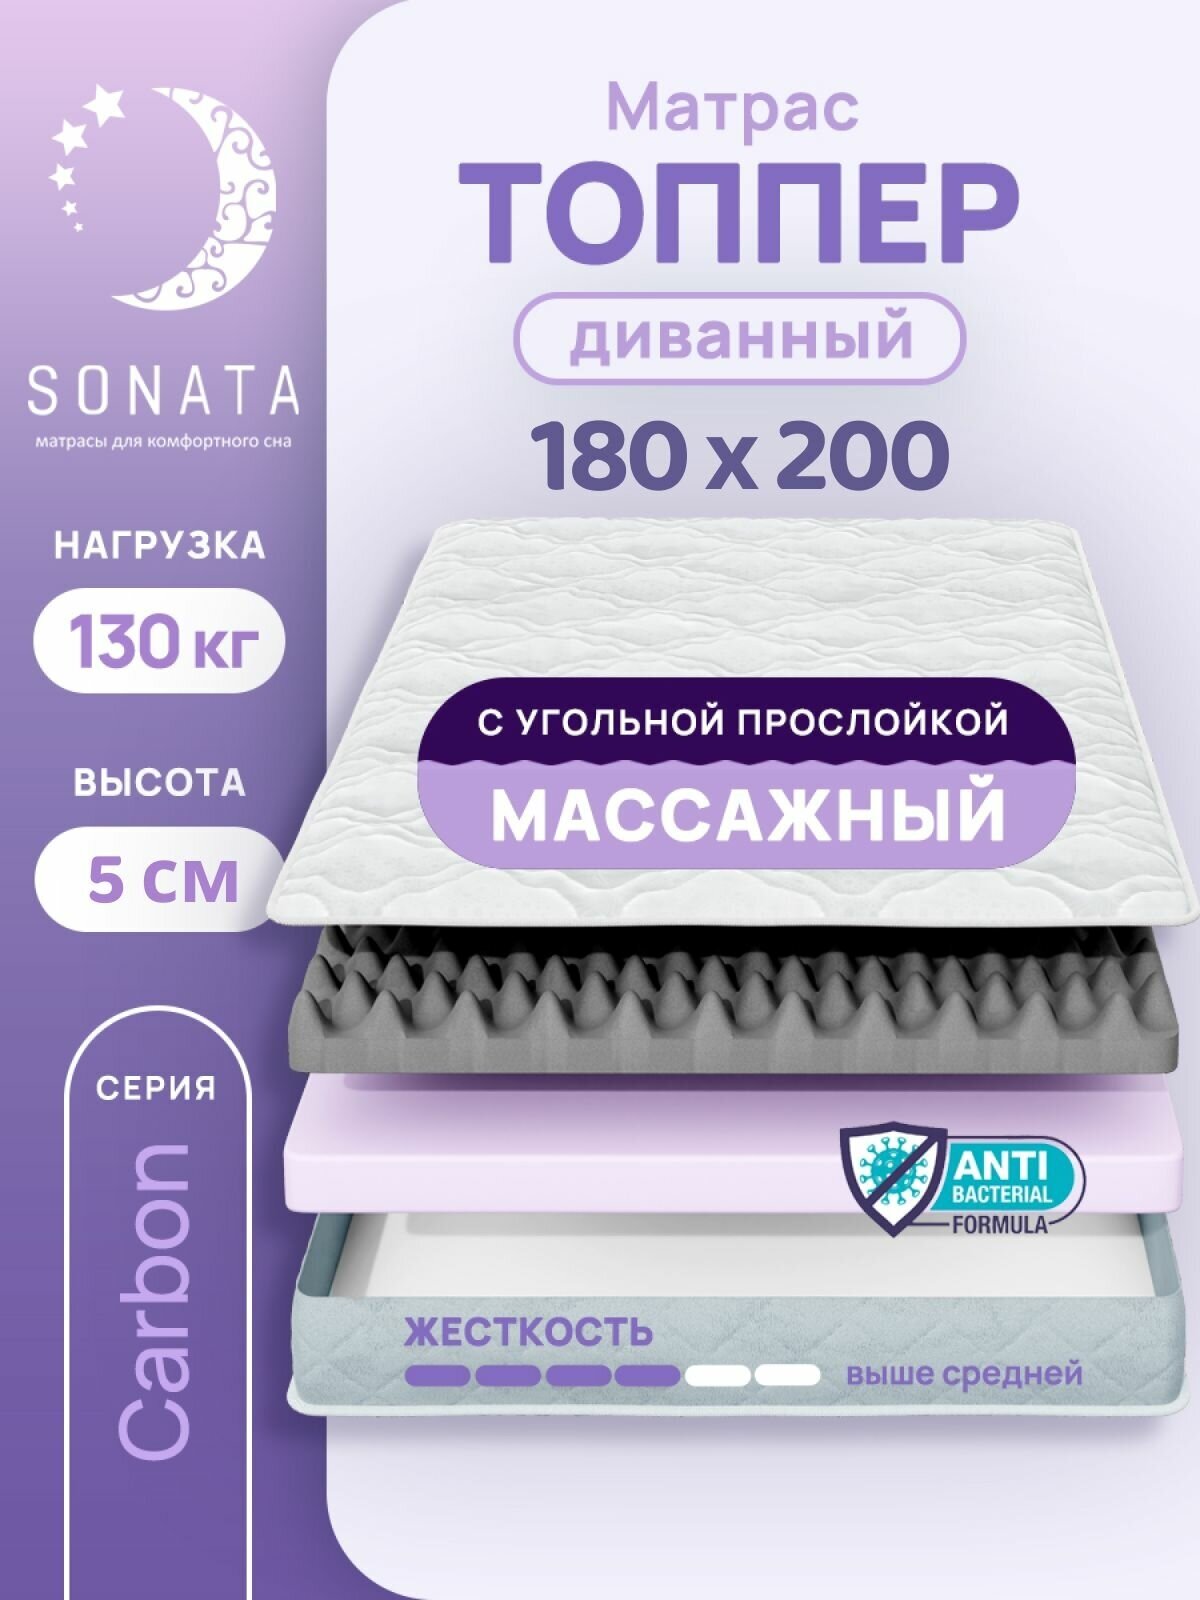 Топпер матрас 180х200 см SONATA, ортопедический, беспружинный, двуспальный, тонкий матрац для дивана, кровати, высота 5 см с массажным эффектом